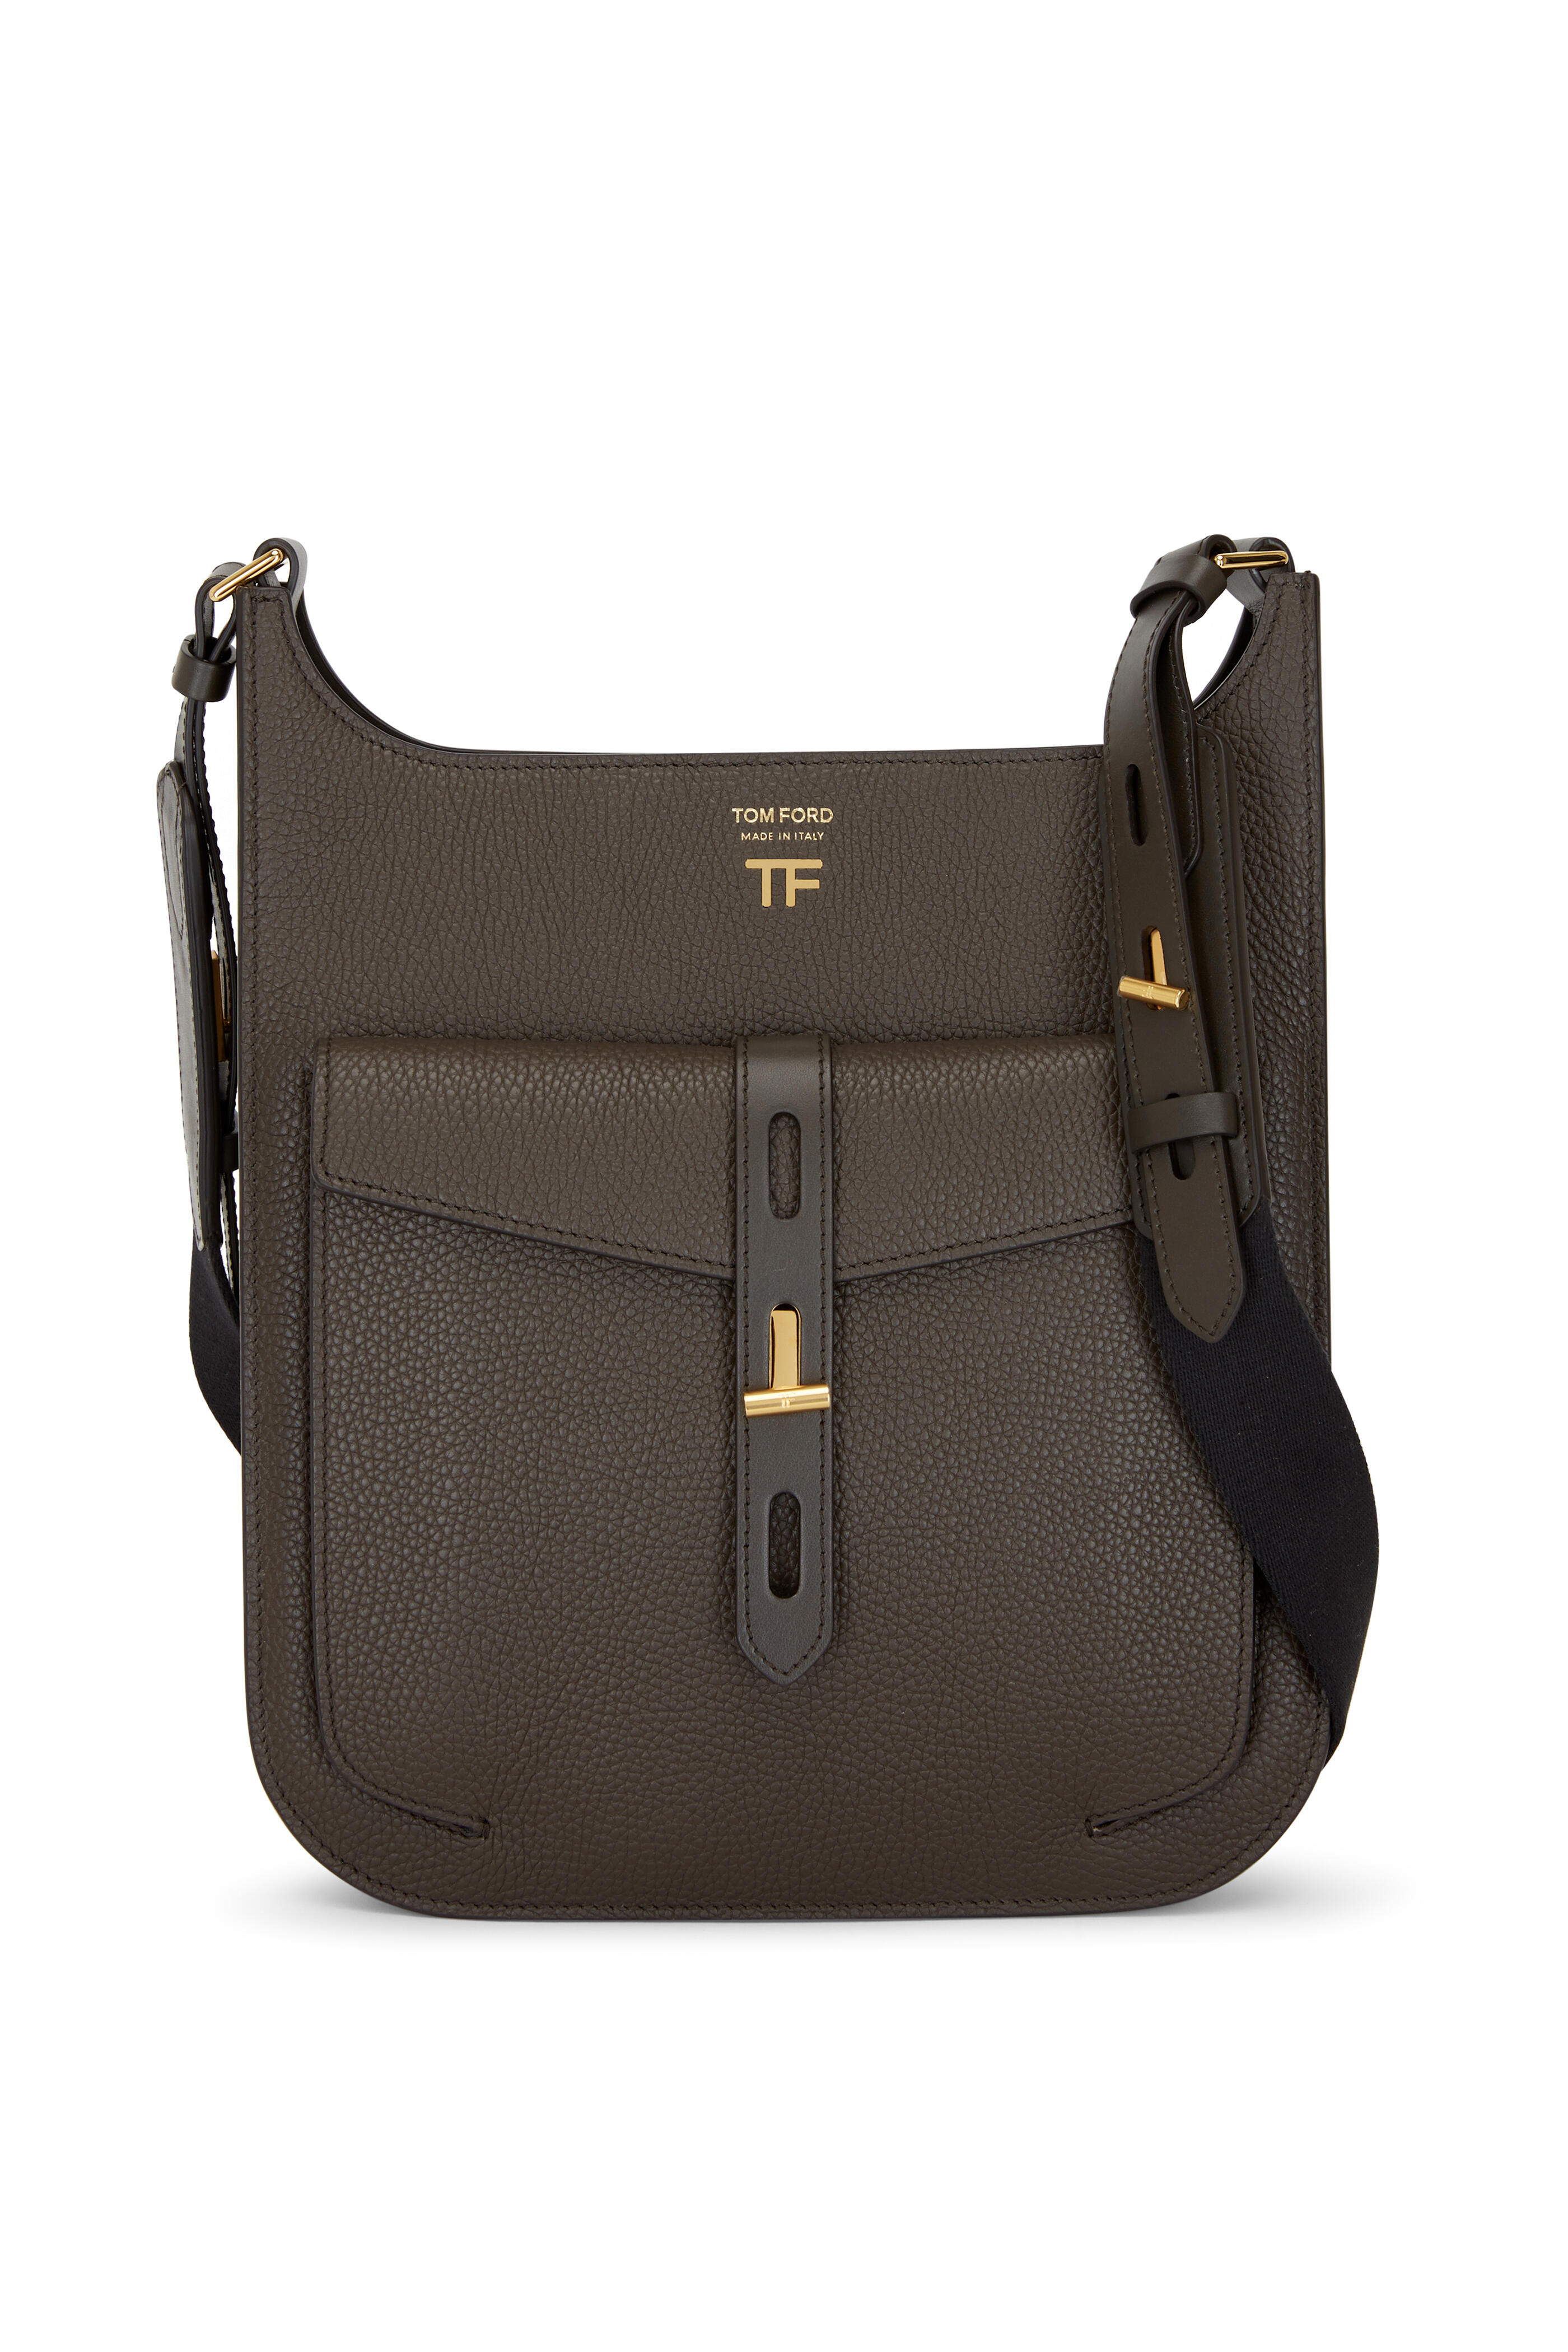 Tom Ford - T Twist Derby Green Leather Medium Crossbody Bag